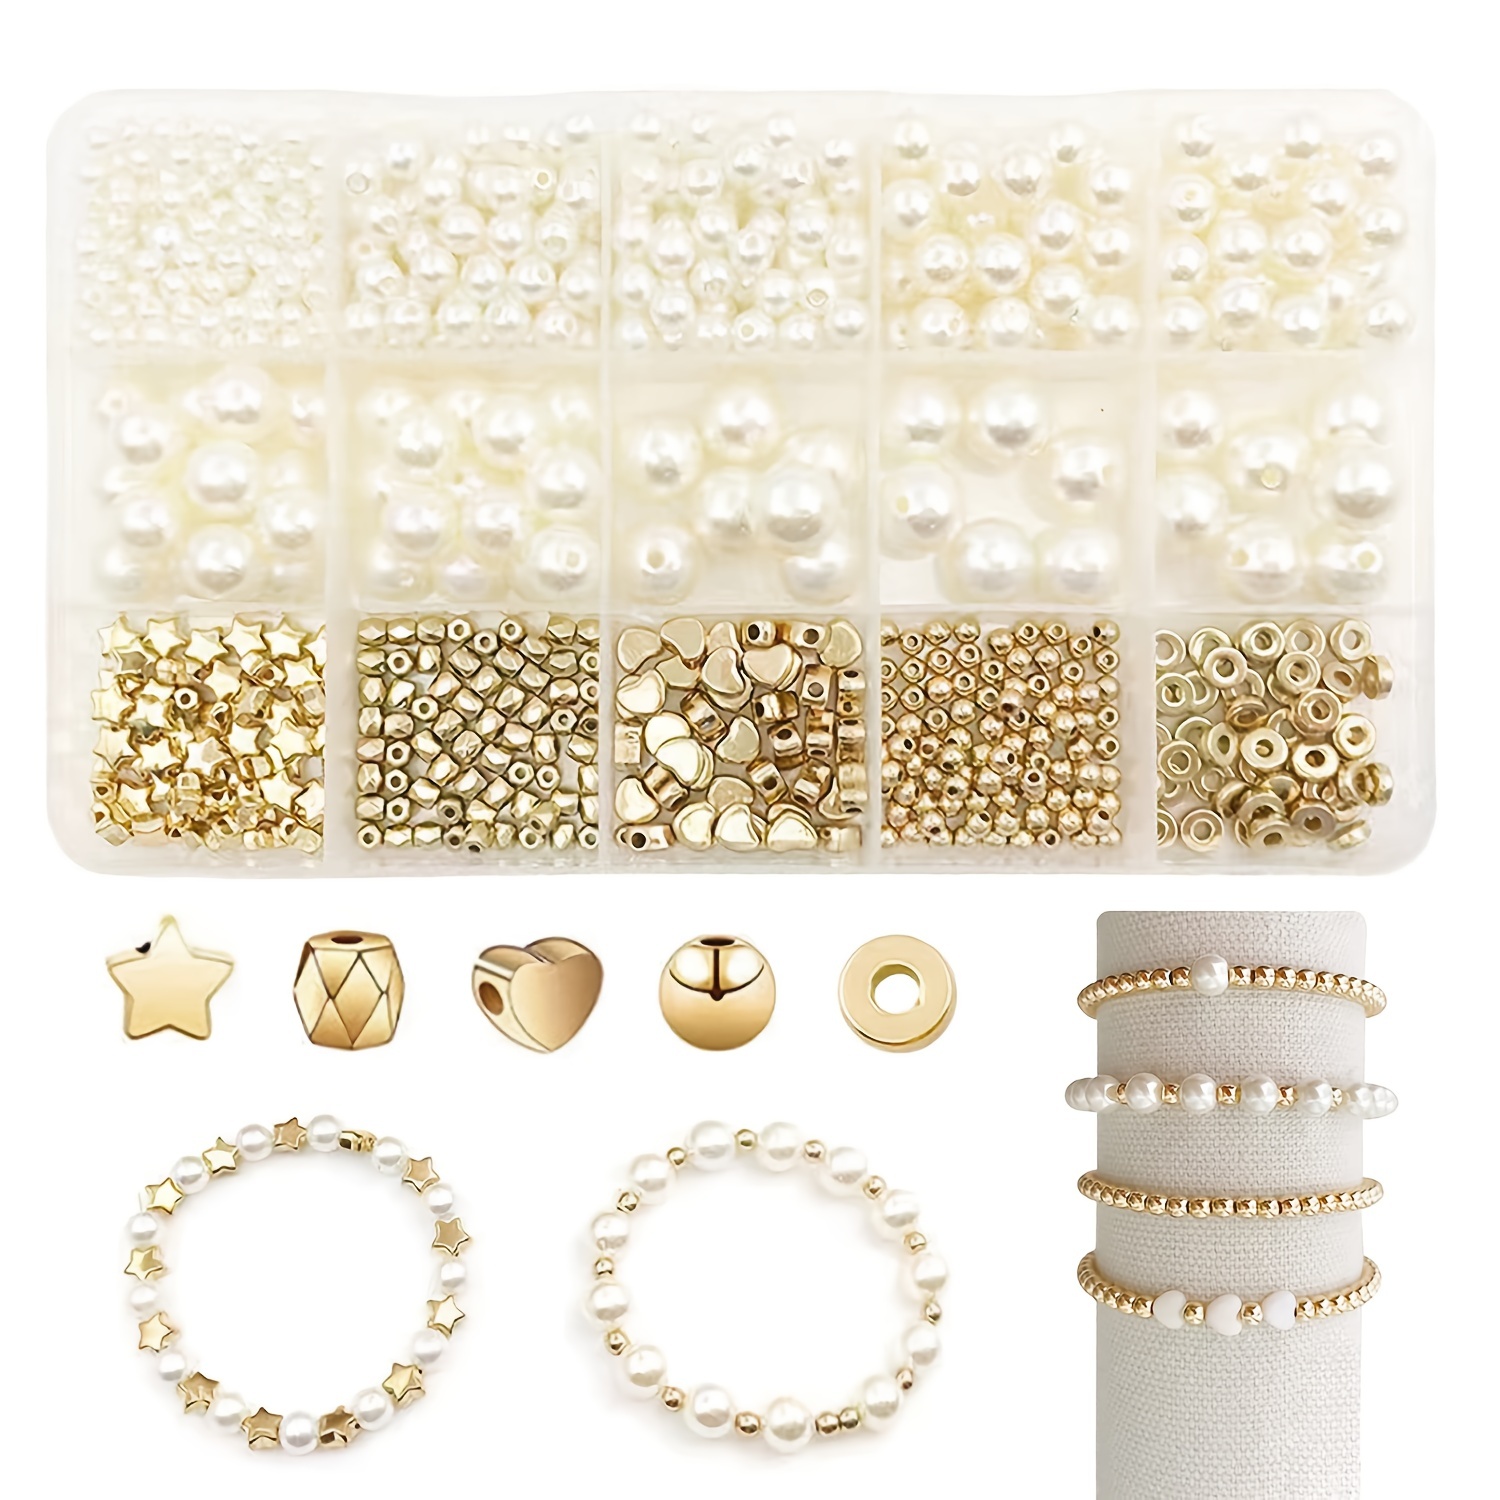 DIY Necklace Bracelet Earrings Set Jewelry Making Kit Handmade